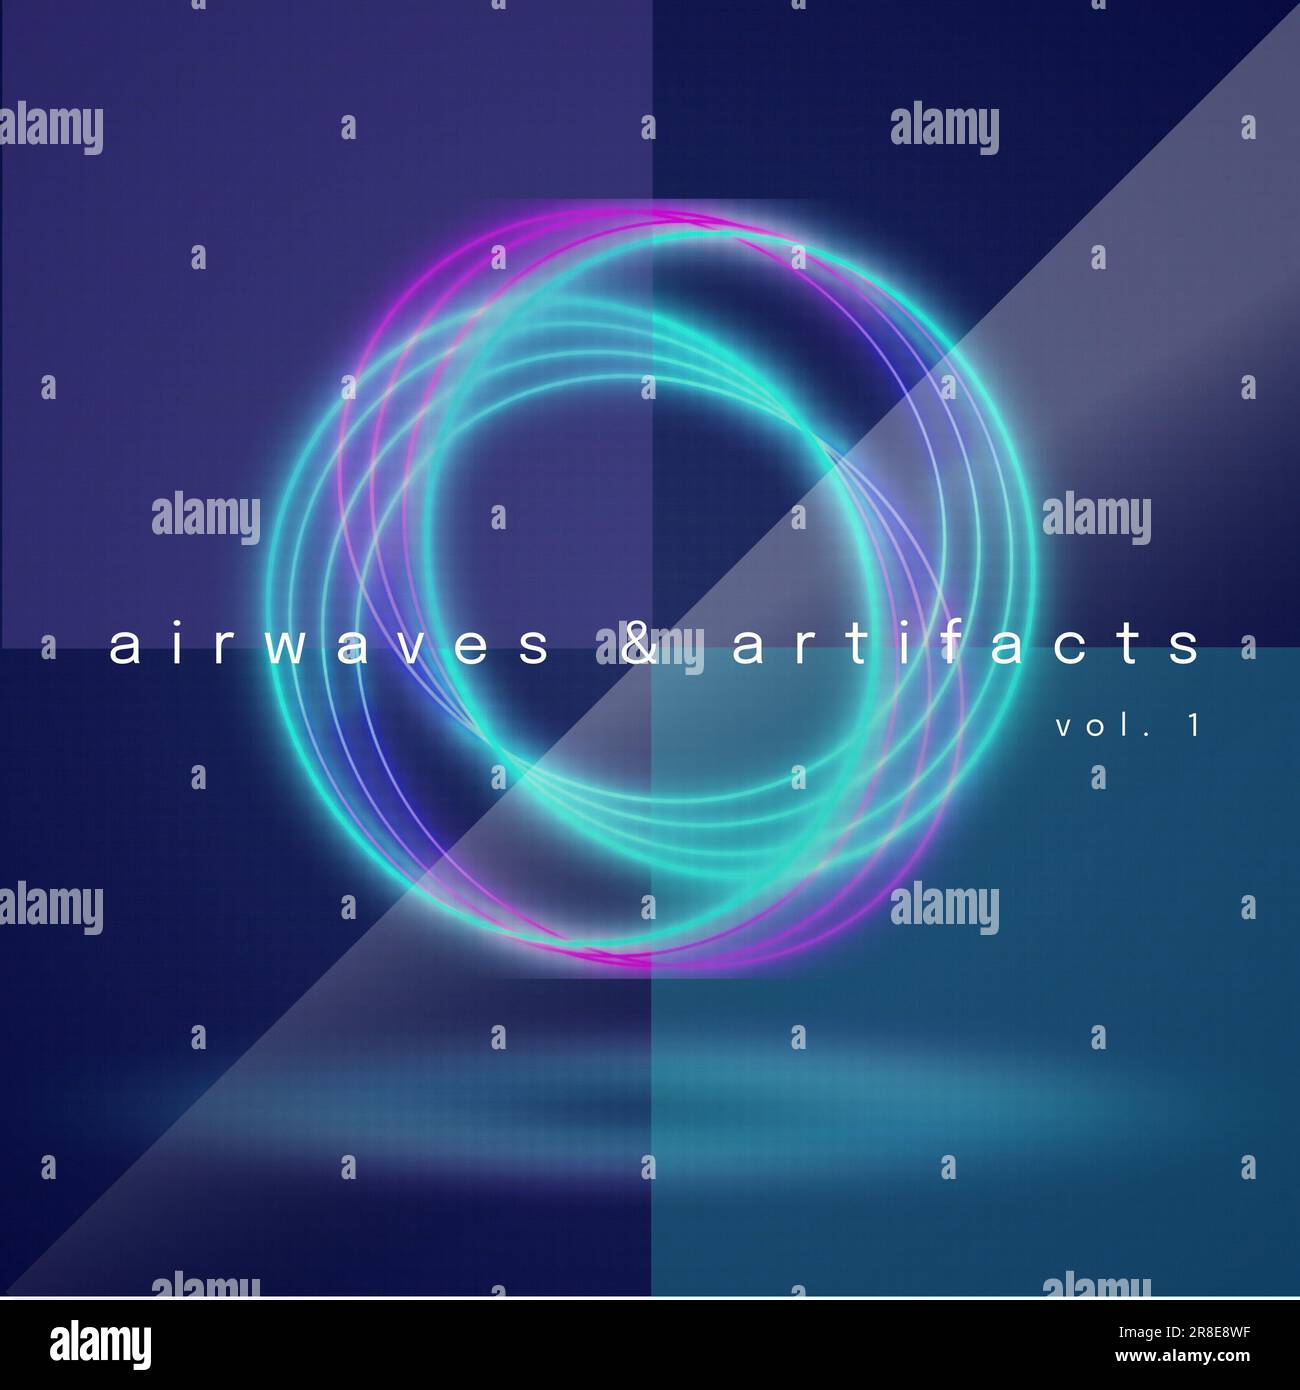 Illustration des ondes aériennes et des artefacts, vol 1 texte sur motif en spirale illuminé, espace de copie Banque D'Images